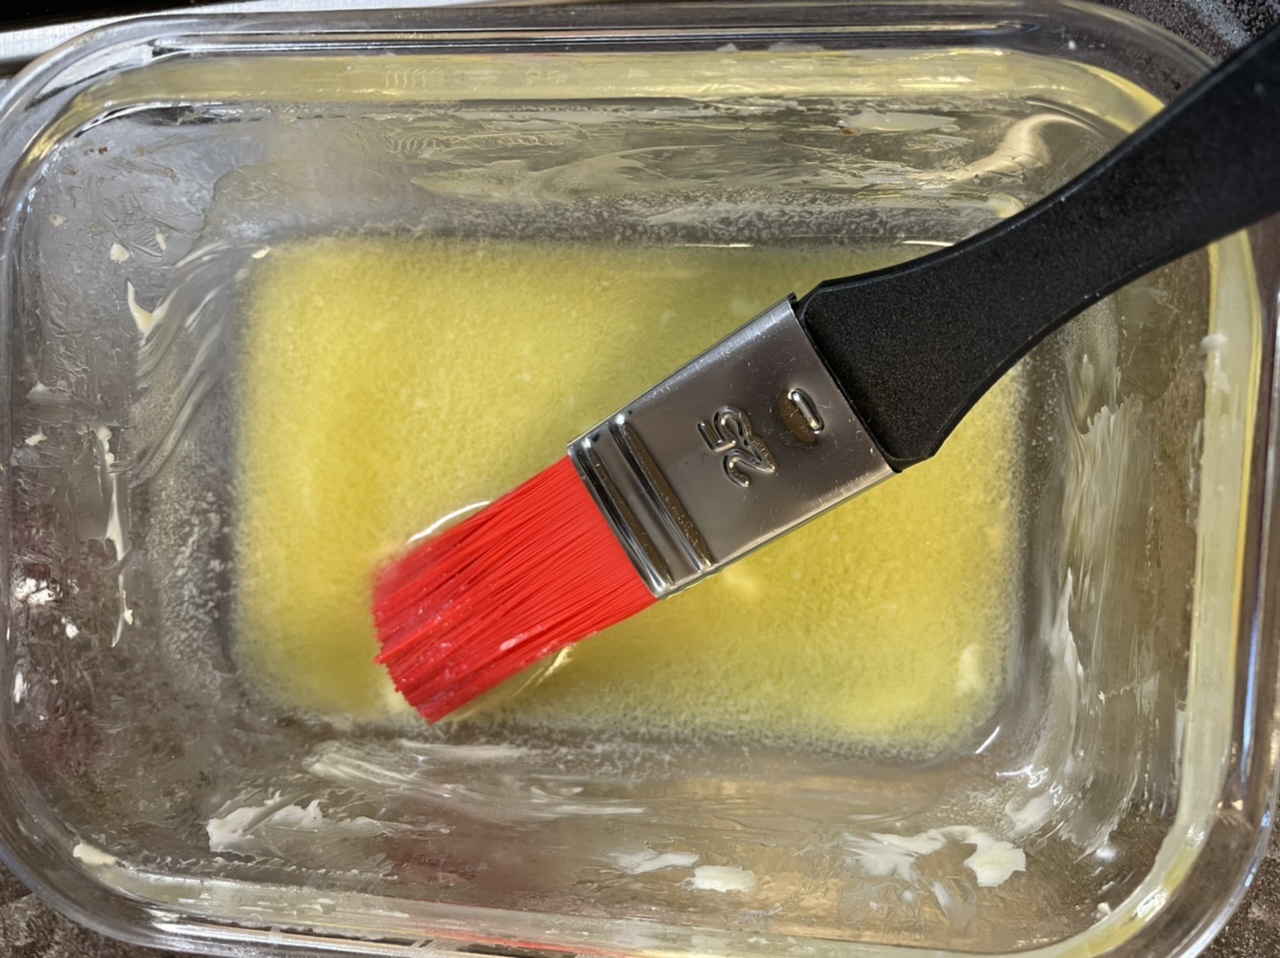 Bild zum Schritt 7 für das Bastel- und DIY-Abenteuer für Kinder: 'Jetzt erwärmt ihr die Butter in einer Schüssel, so dass...'